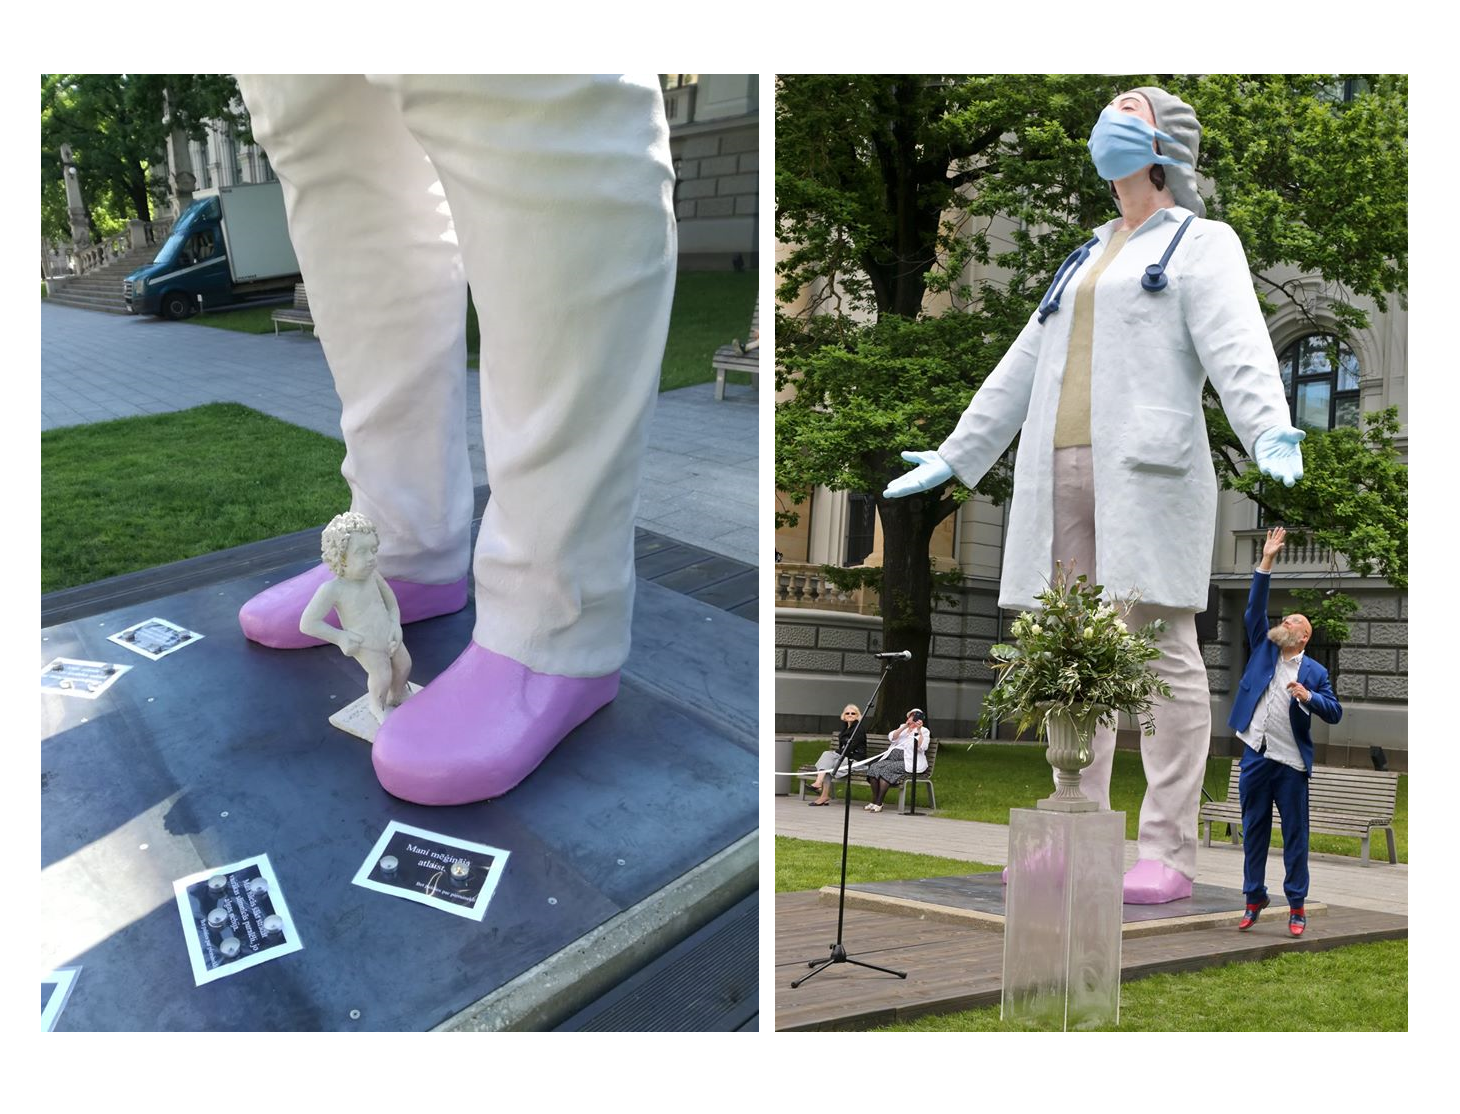 ФотКа дня: В Риге установили пенопластовую скульптуру в благодарность медикам